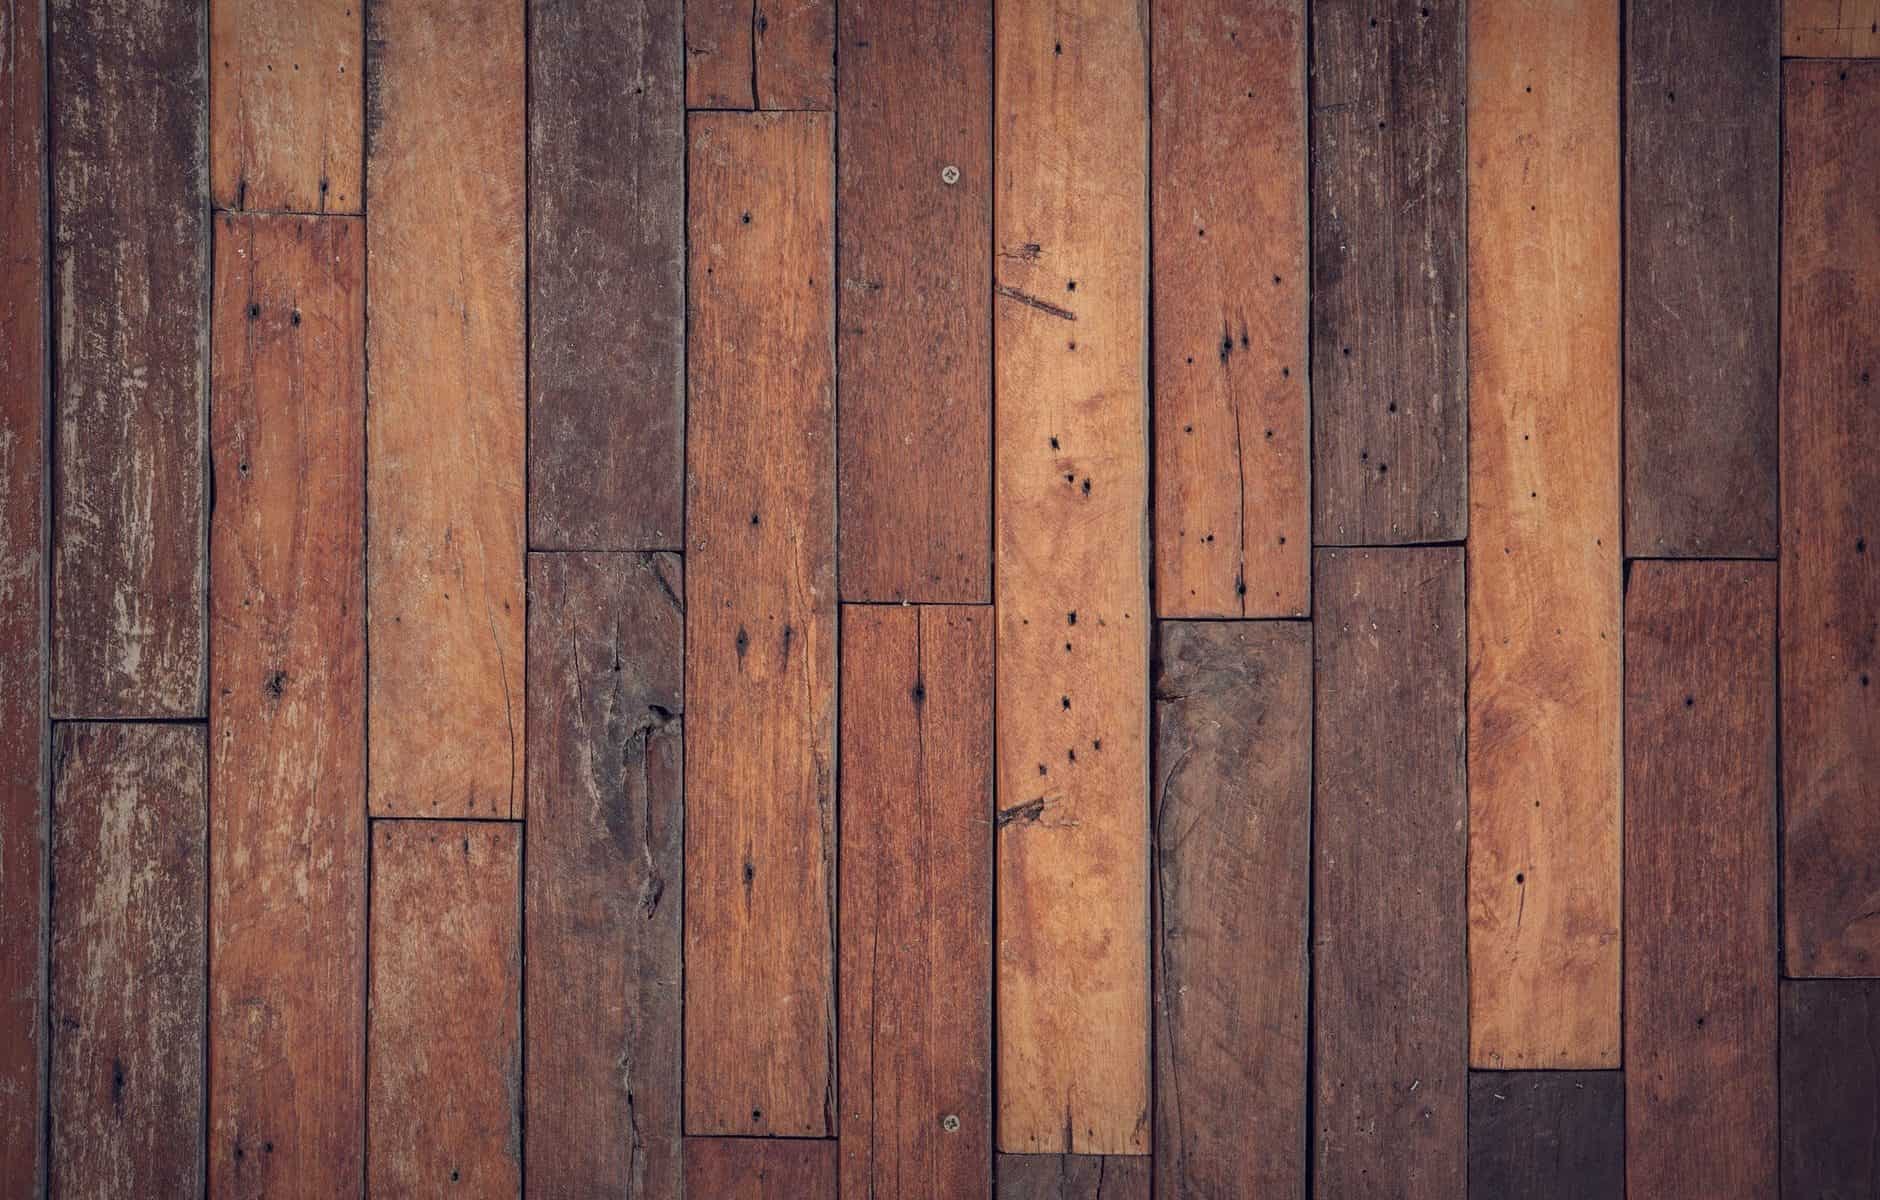 brown wooden floor